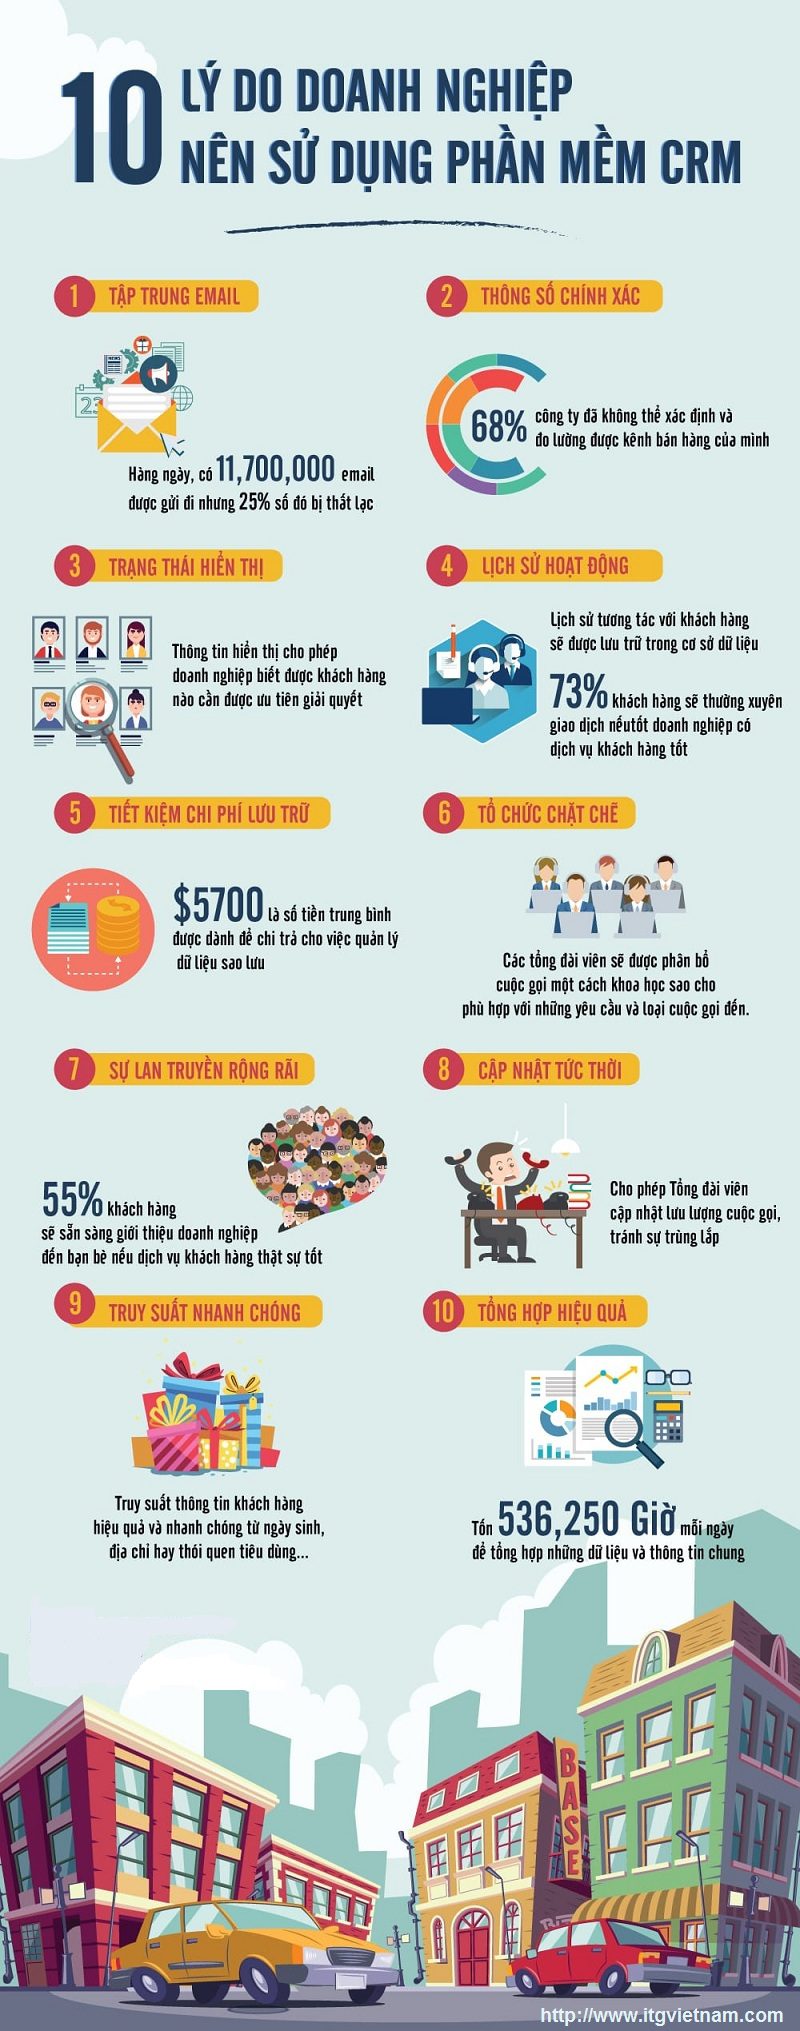 loi ich khi su dung phan mem crm - Infographic: 10 lợi ích doanh nghiệp có được khi sử dụng phần mềm CRM